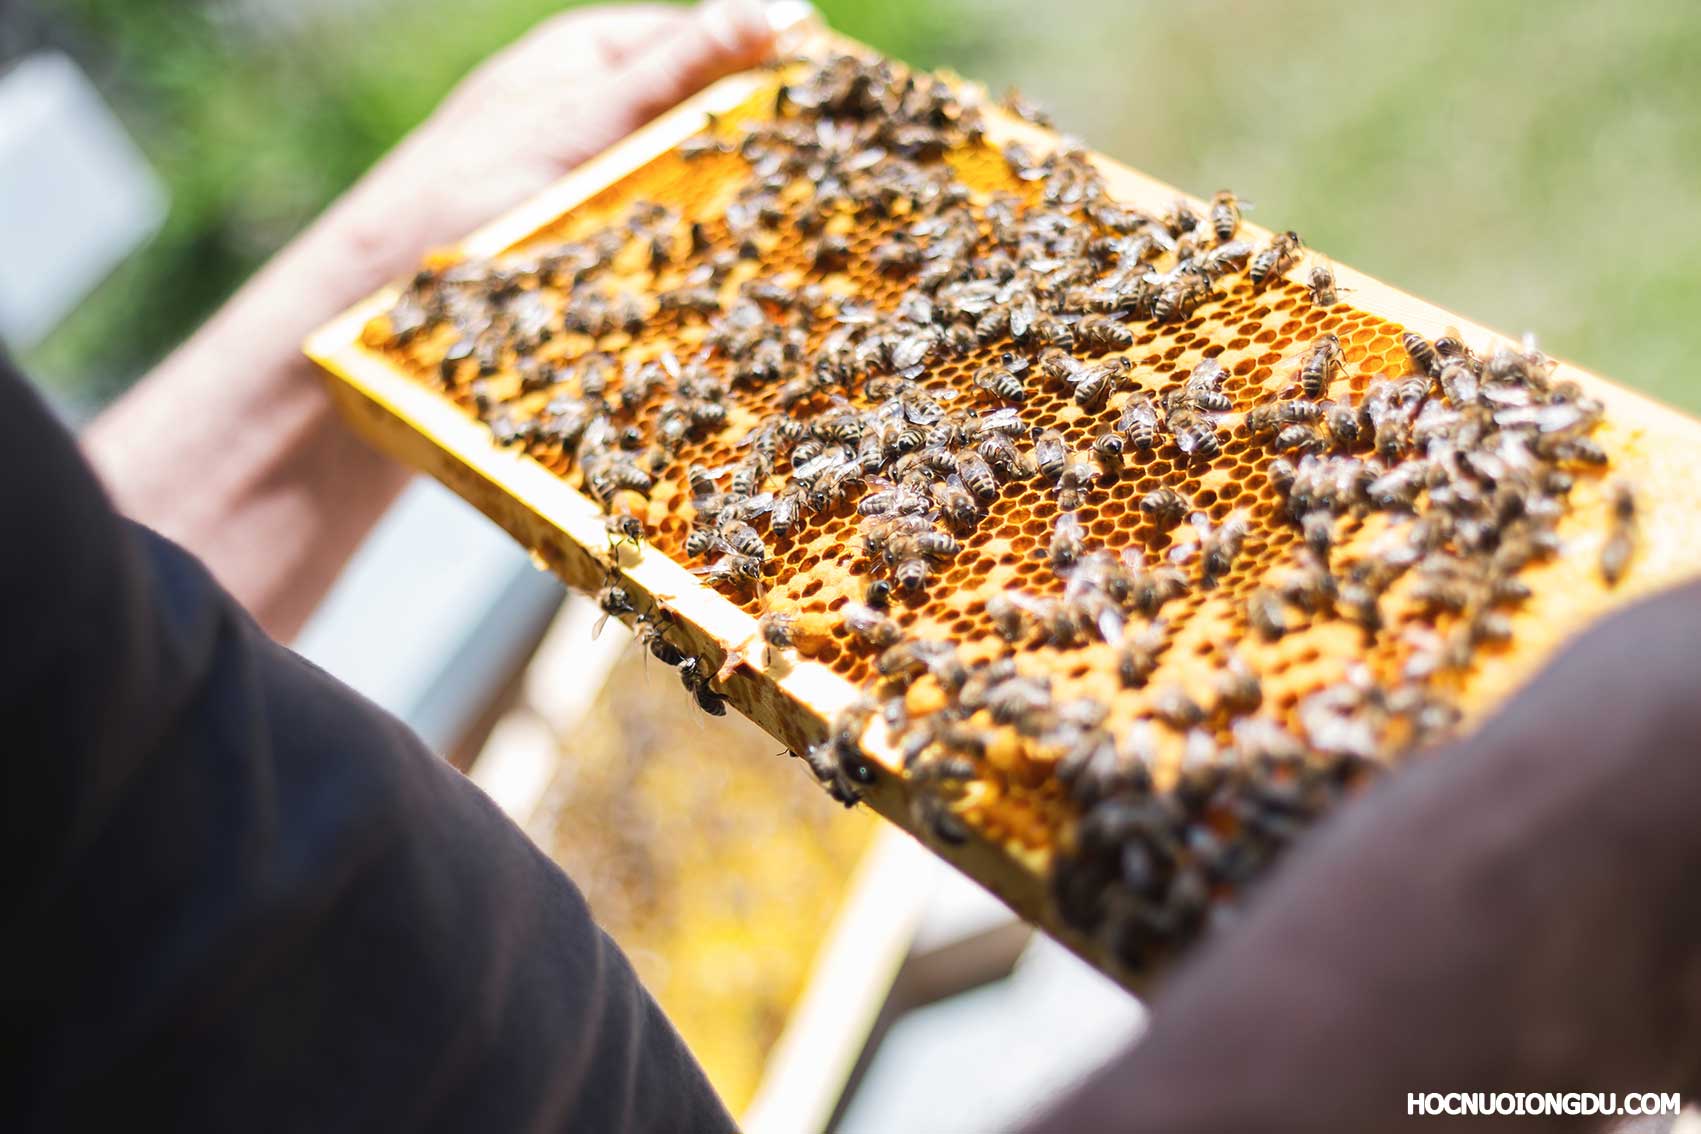 Nên chọn mua mật từ trại nuôi ong gần bạn là tốt nhất